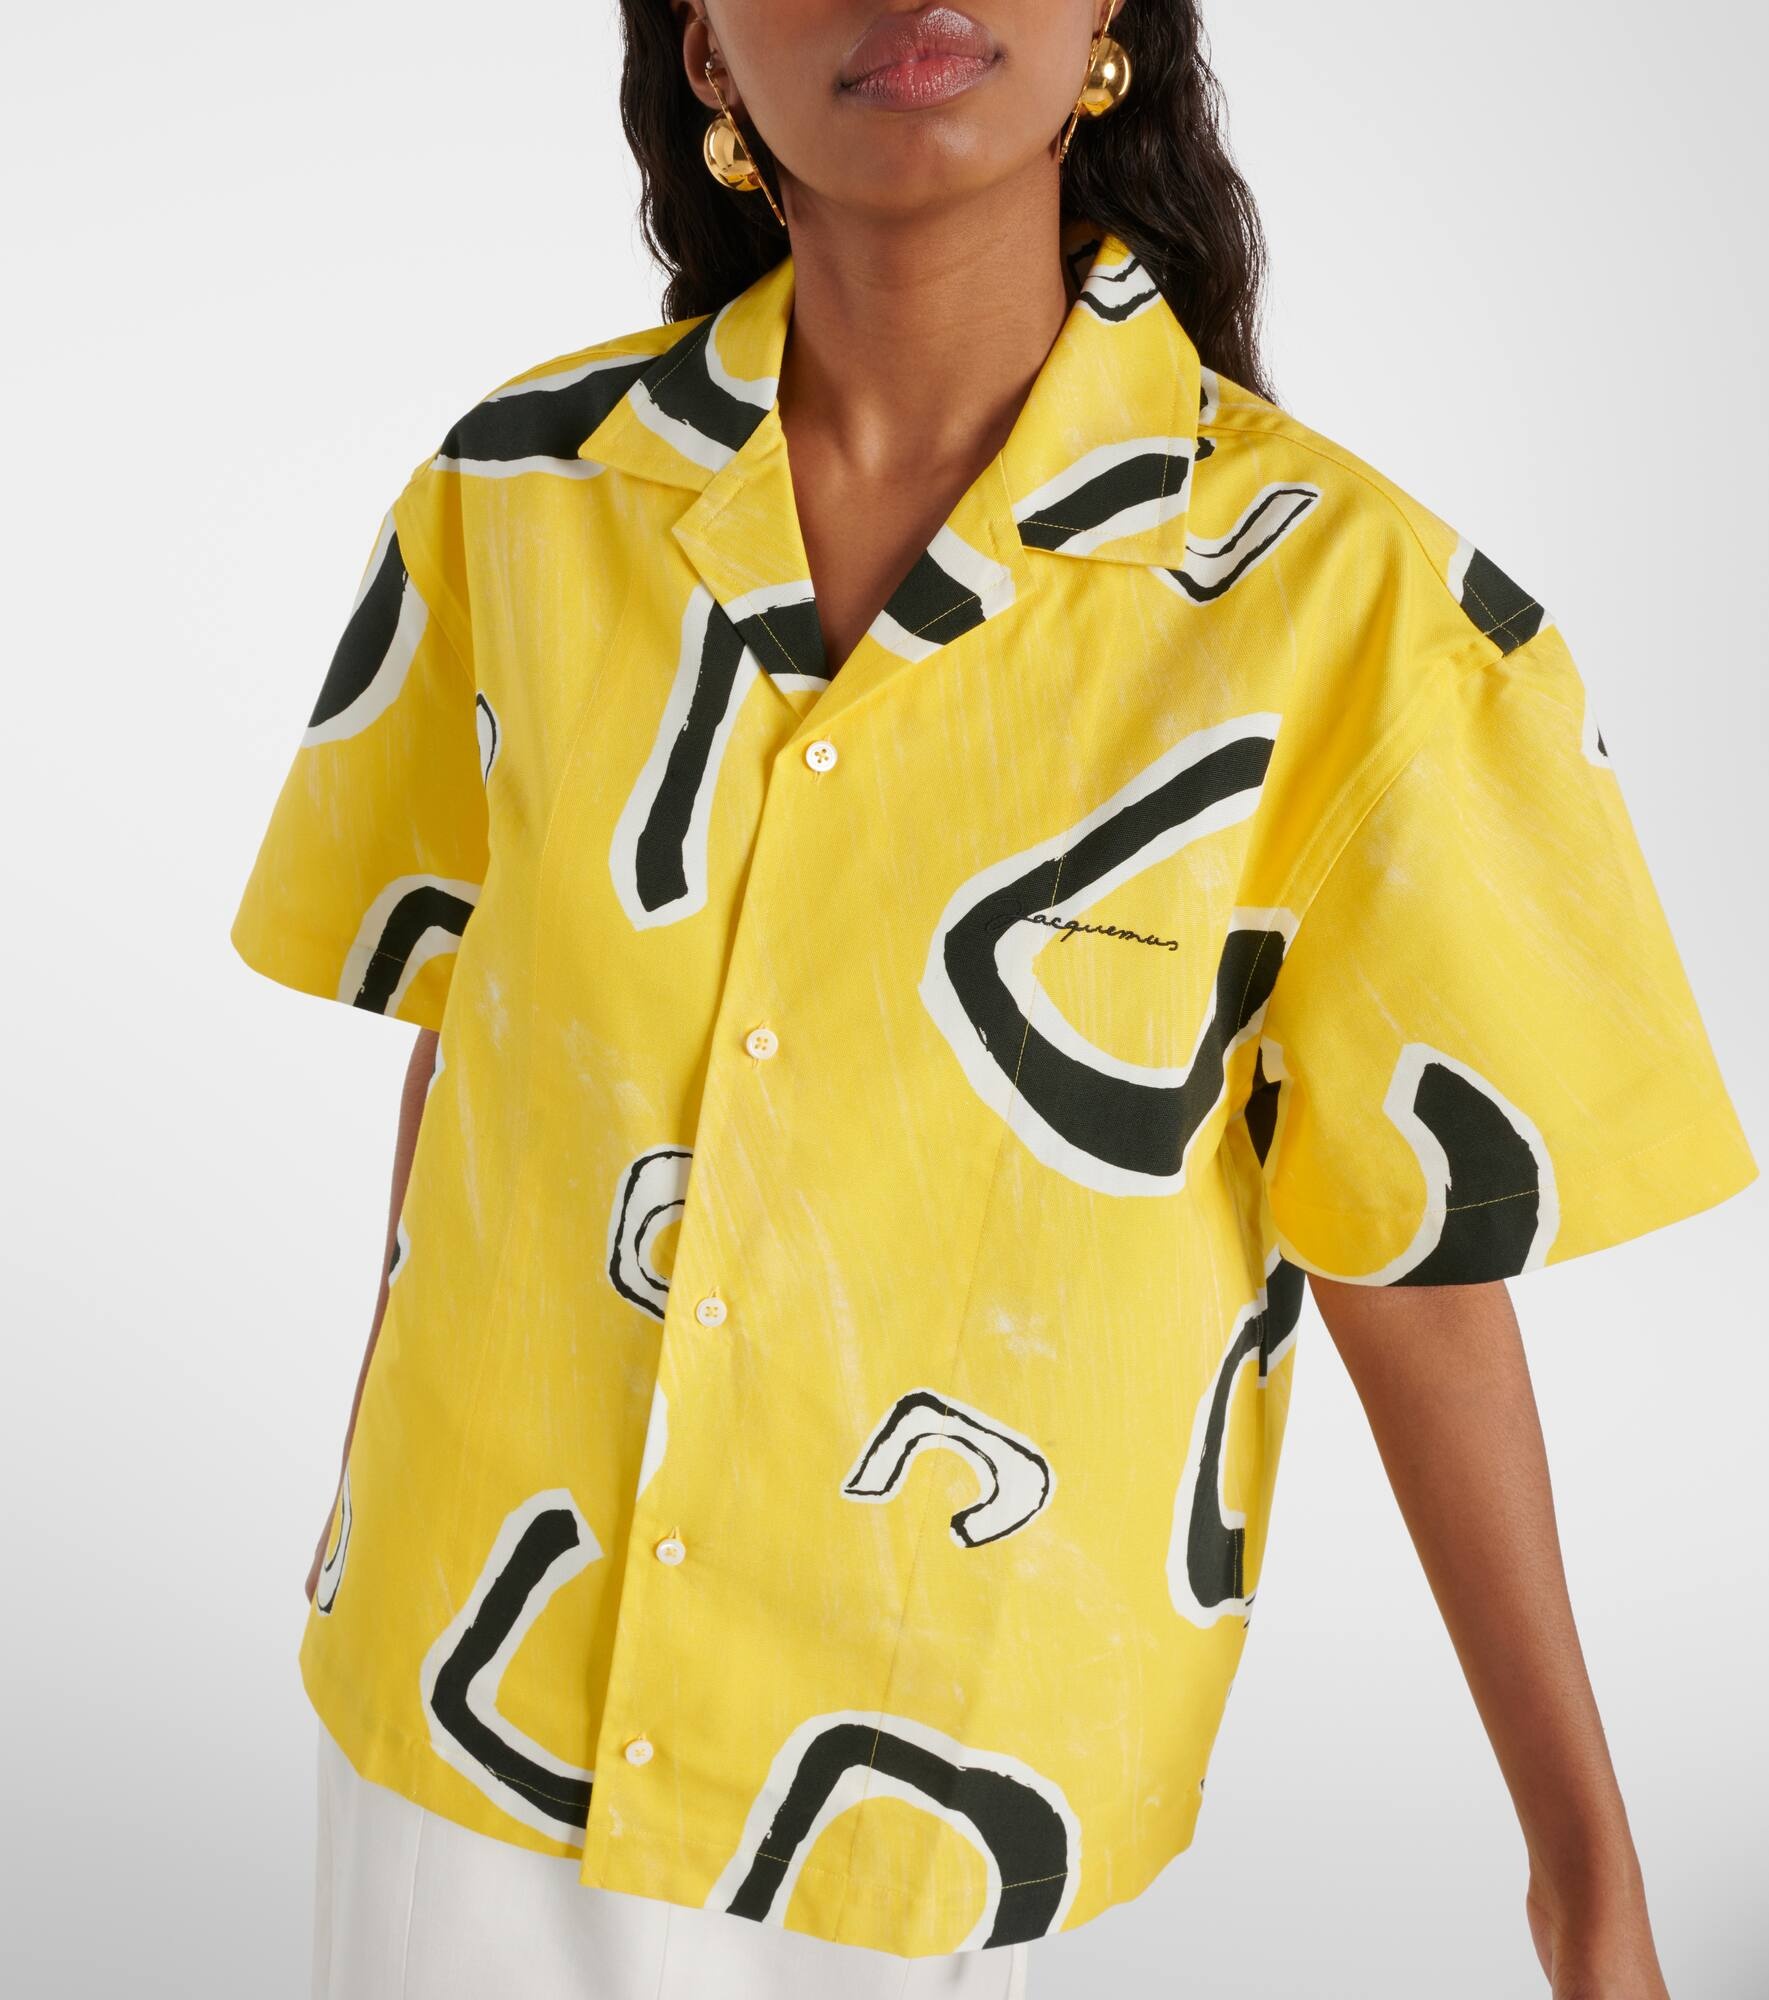 La Chemise Jean printed cotton bowling shirt - 4